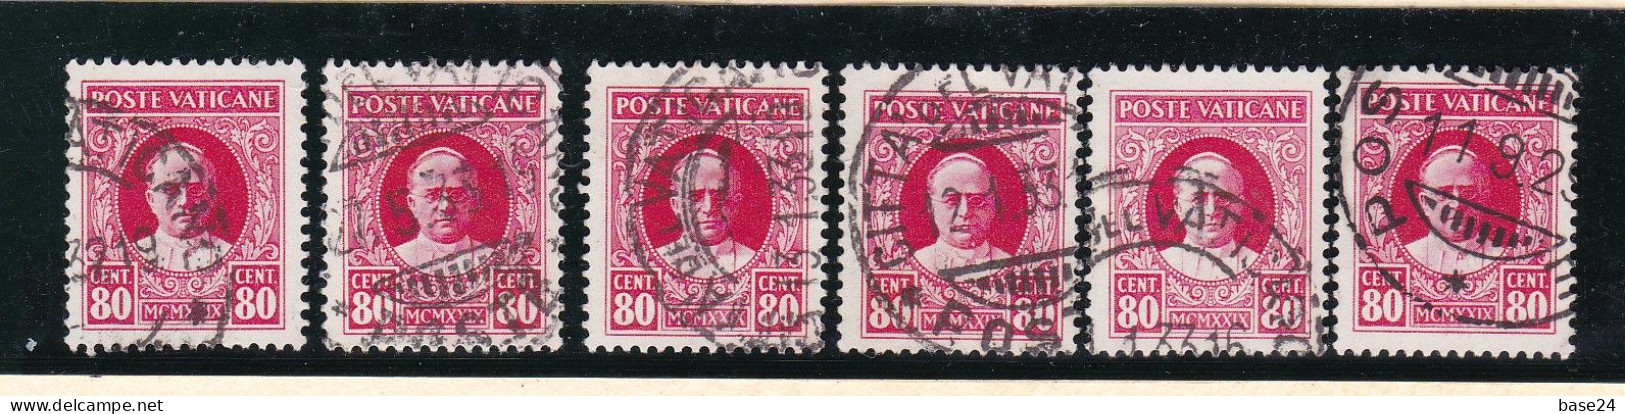 1929 Vaticano Vatican SEGNATASSE  POSTAGE DUE 80 Cent (x 6) Usati USED - Segnatasse